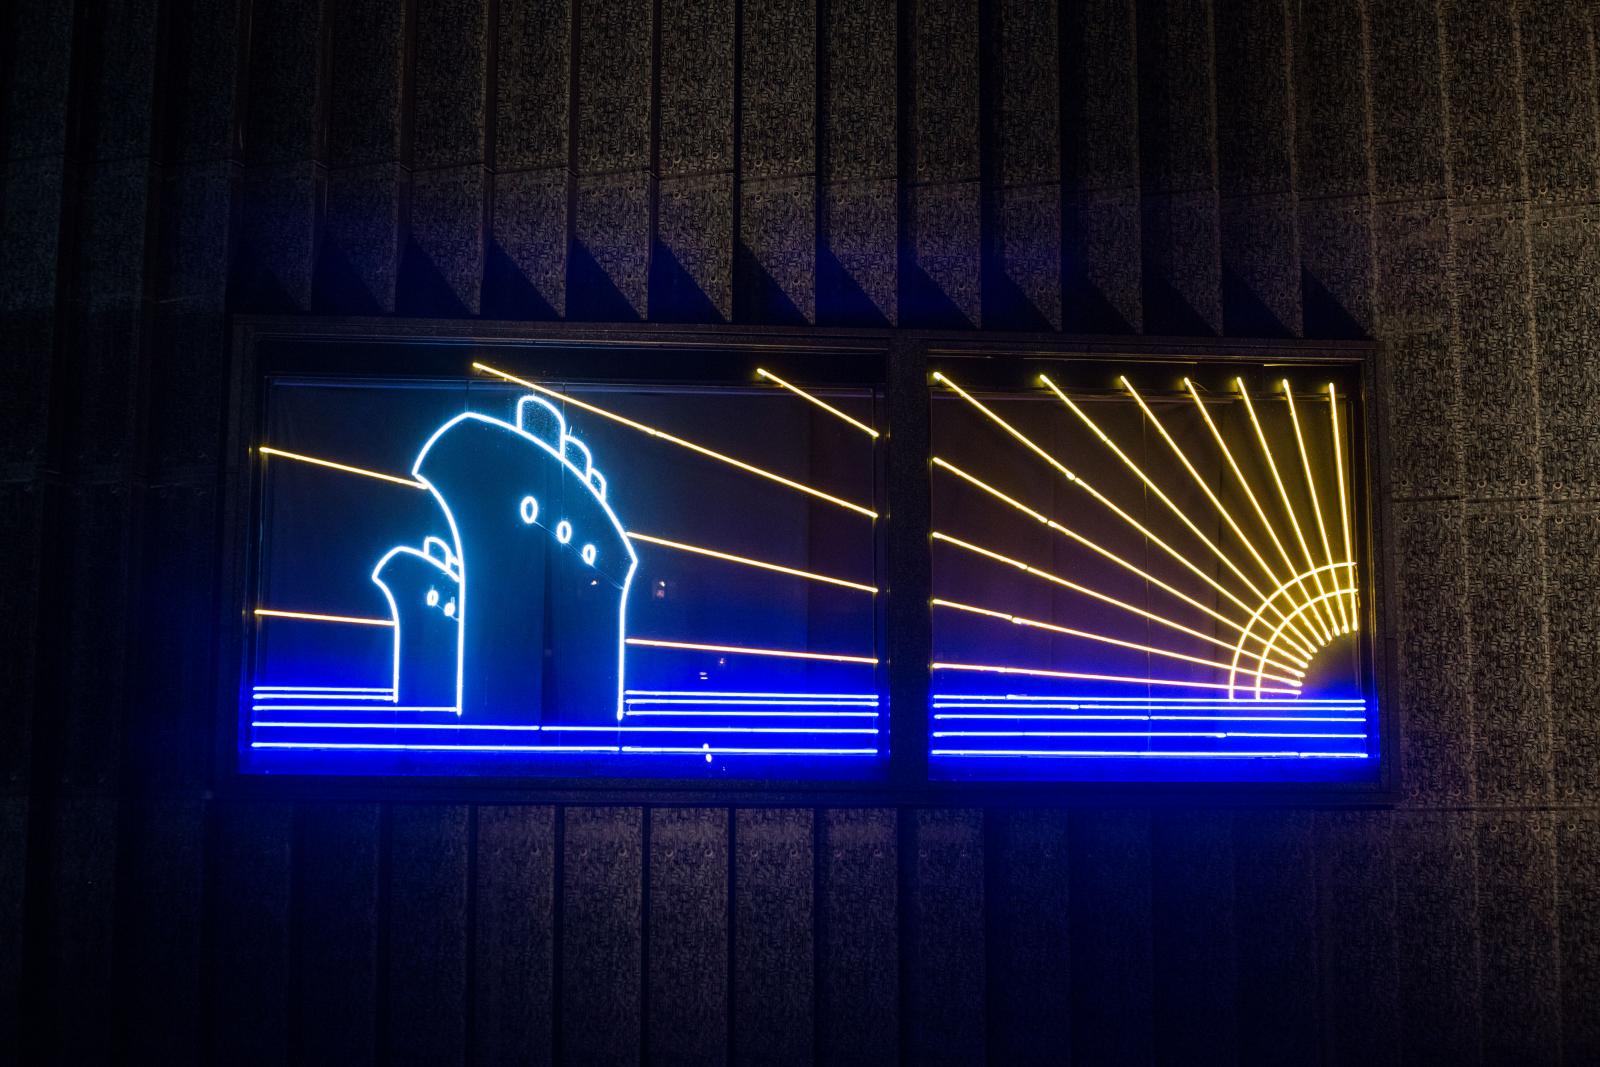 Wystawa czasowa "Gdynia - Tel Awiw" w Muzeum POLIN. Na zdjęciu neon zaprojektowany przez Maurycego Gomulickiego, który przedstawia dwa transatlantyki na morzu, oświetlone promieniami zachodzącego słońca. Neon utrzymany w kolorach białym, niebieskim i żółtym